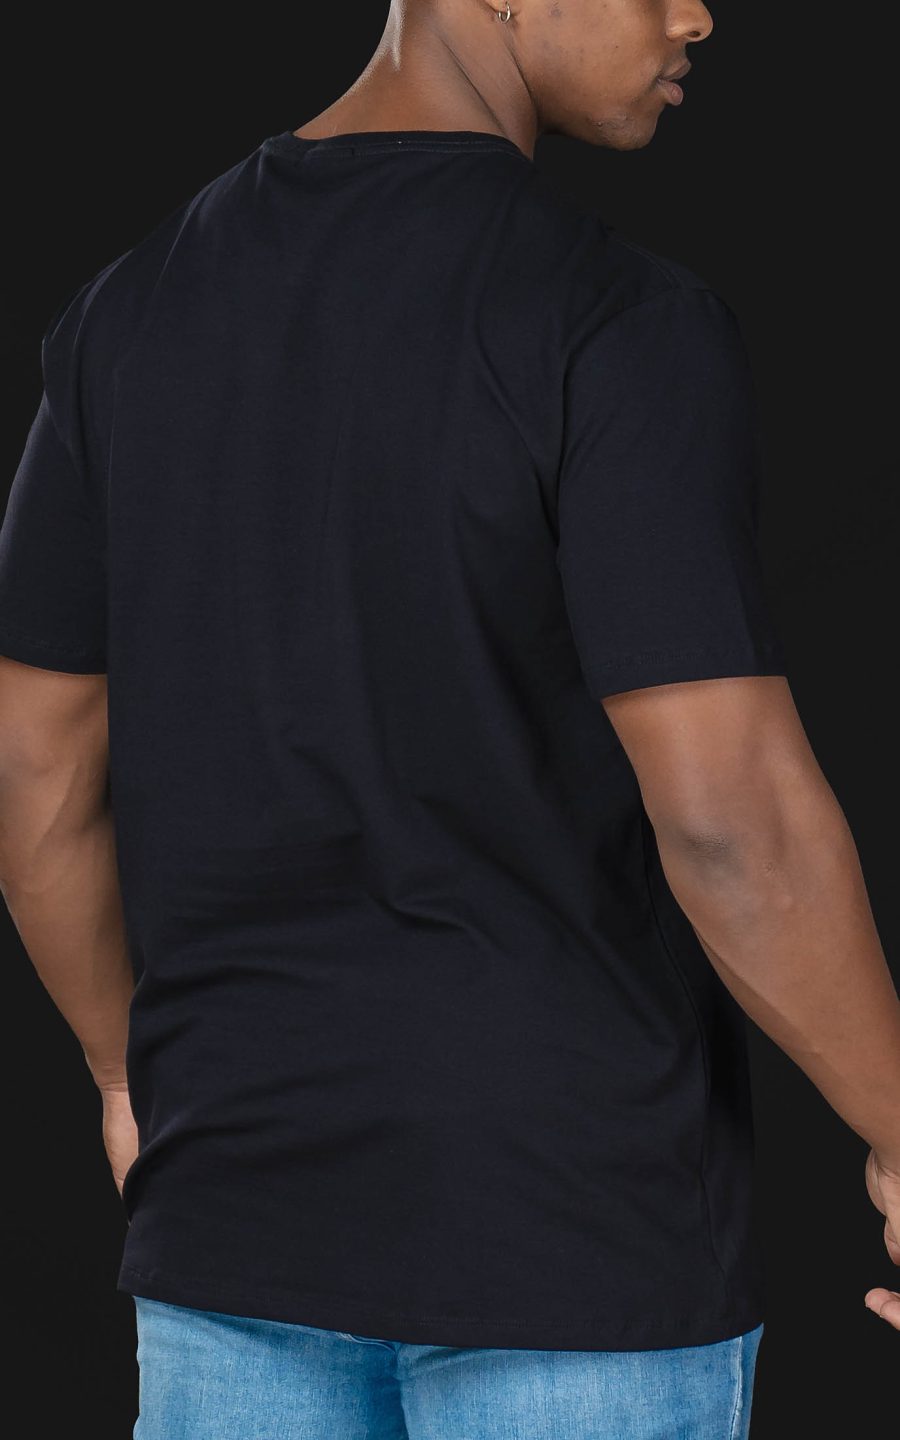 camiseta-masculina-diesel-denim-division-preta-costas.jpg